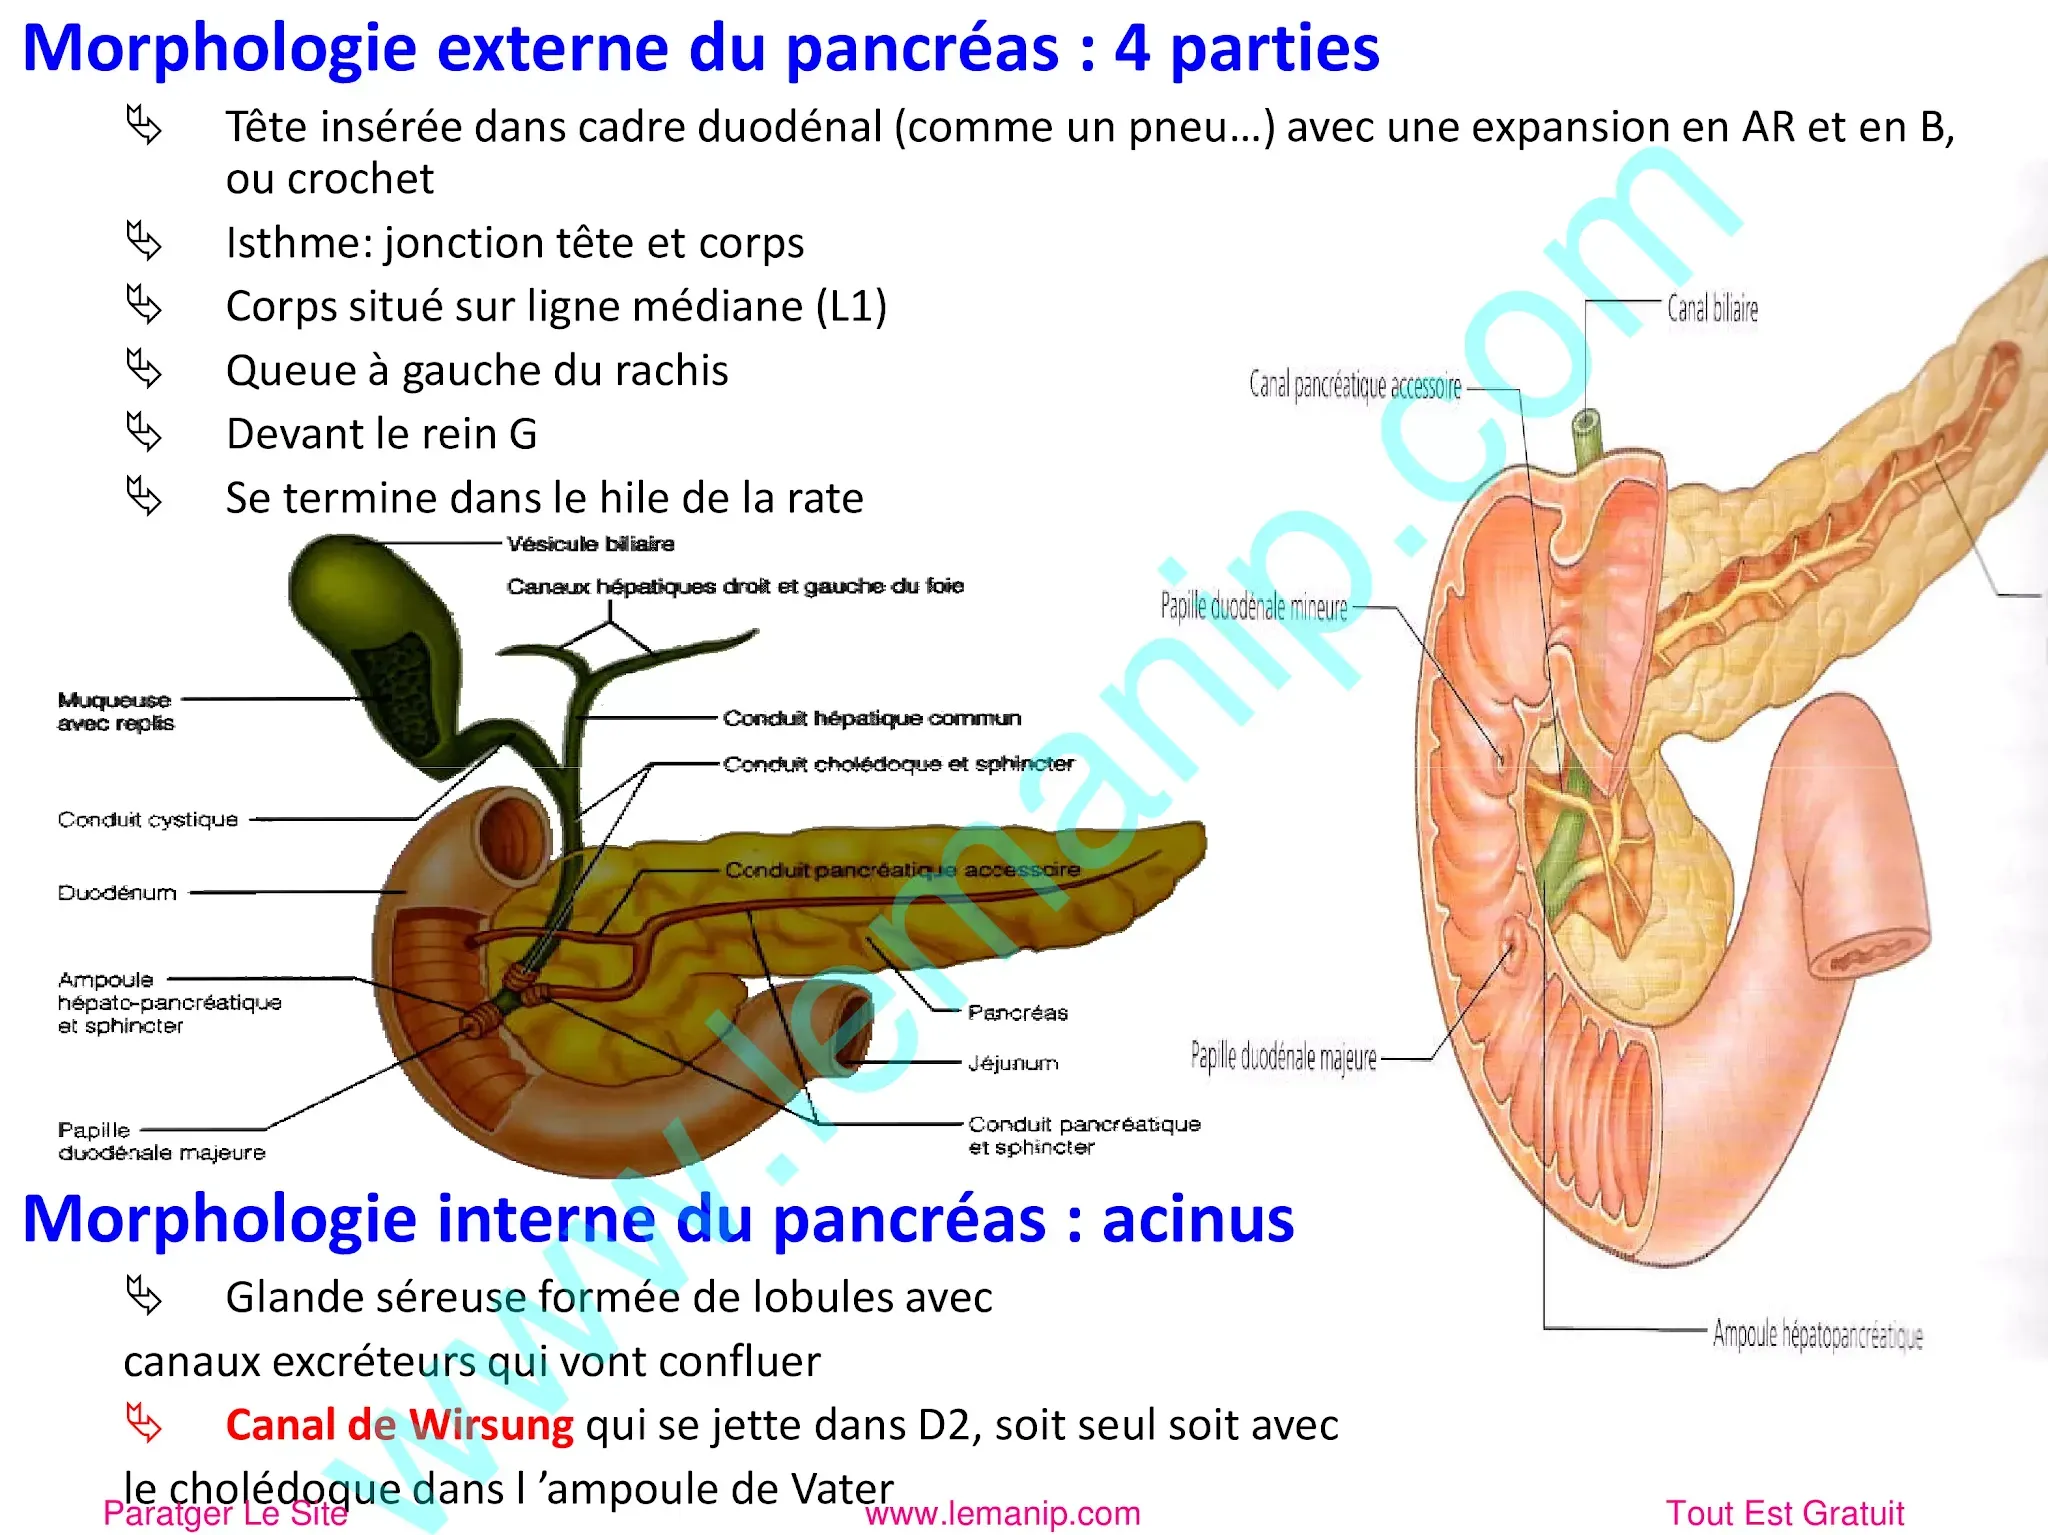 Morphologie externe du pancréas